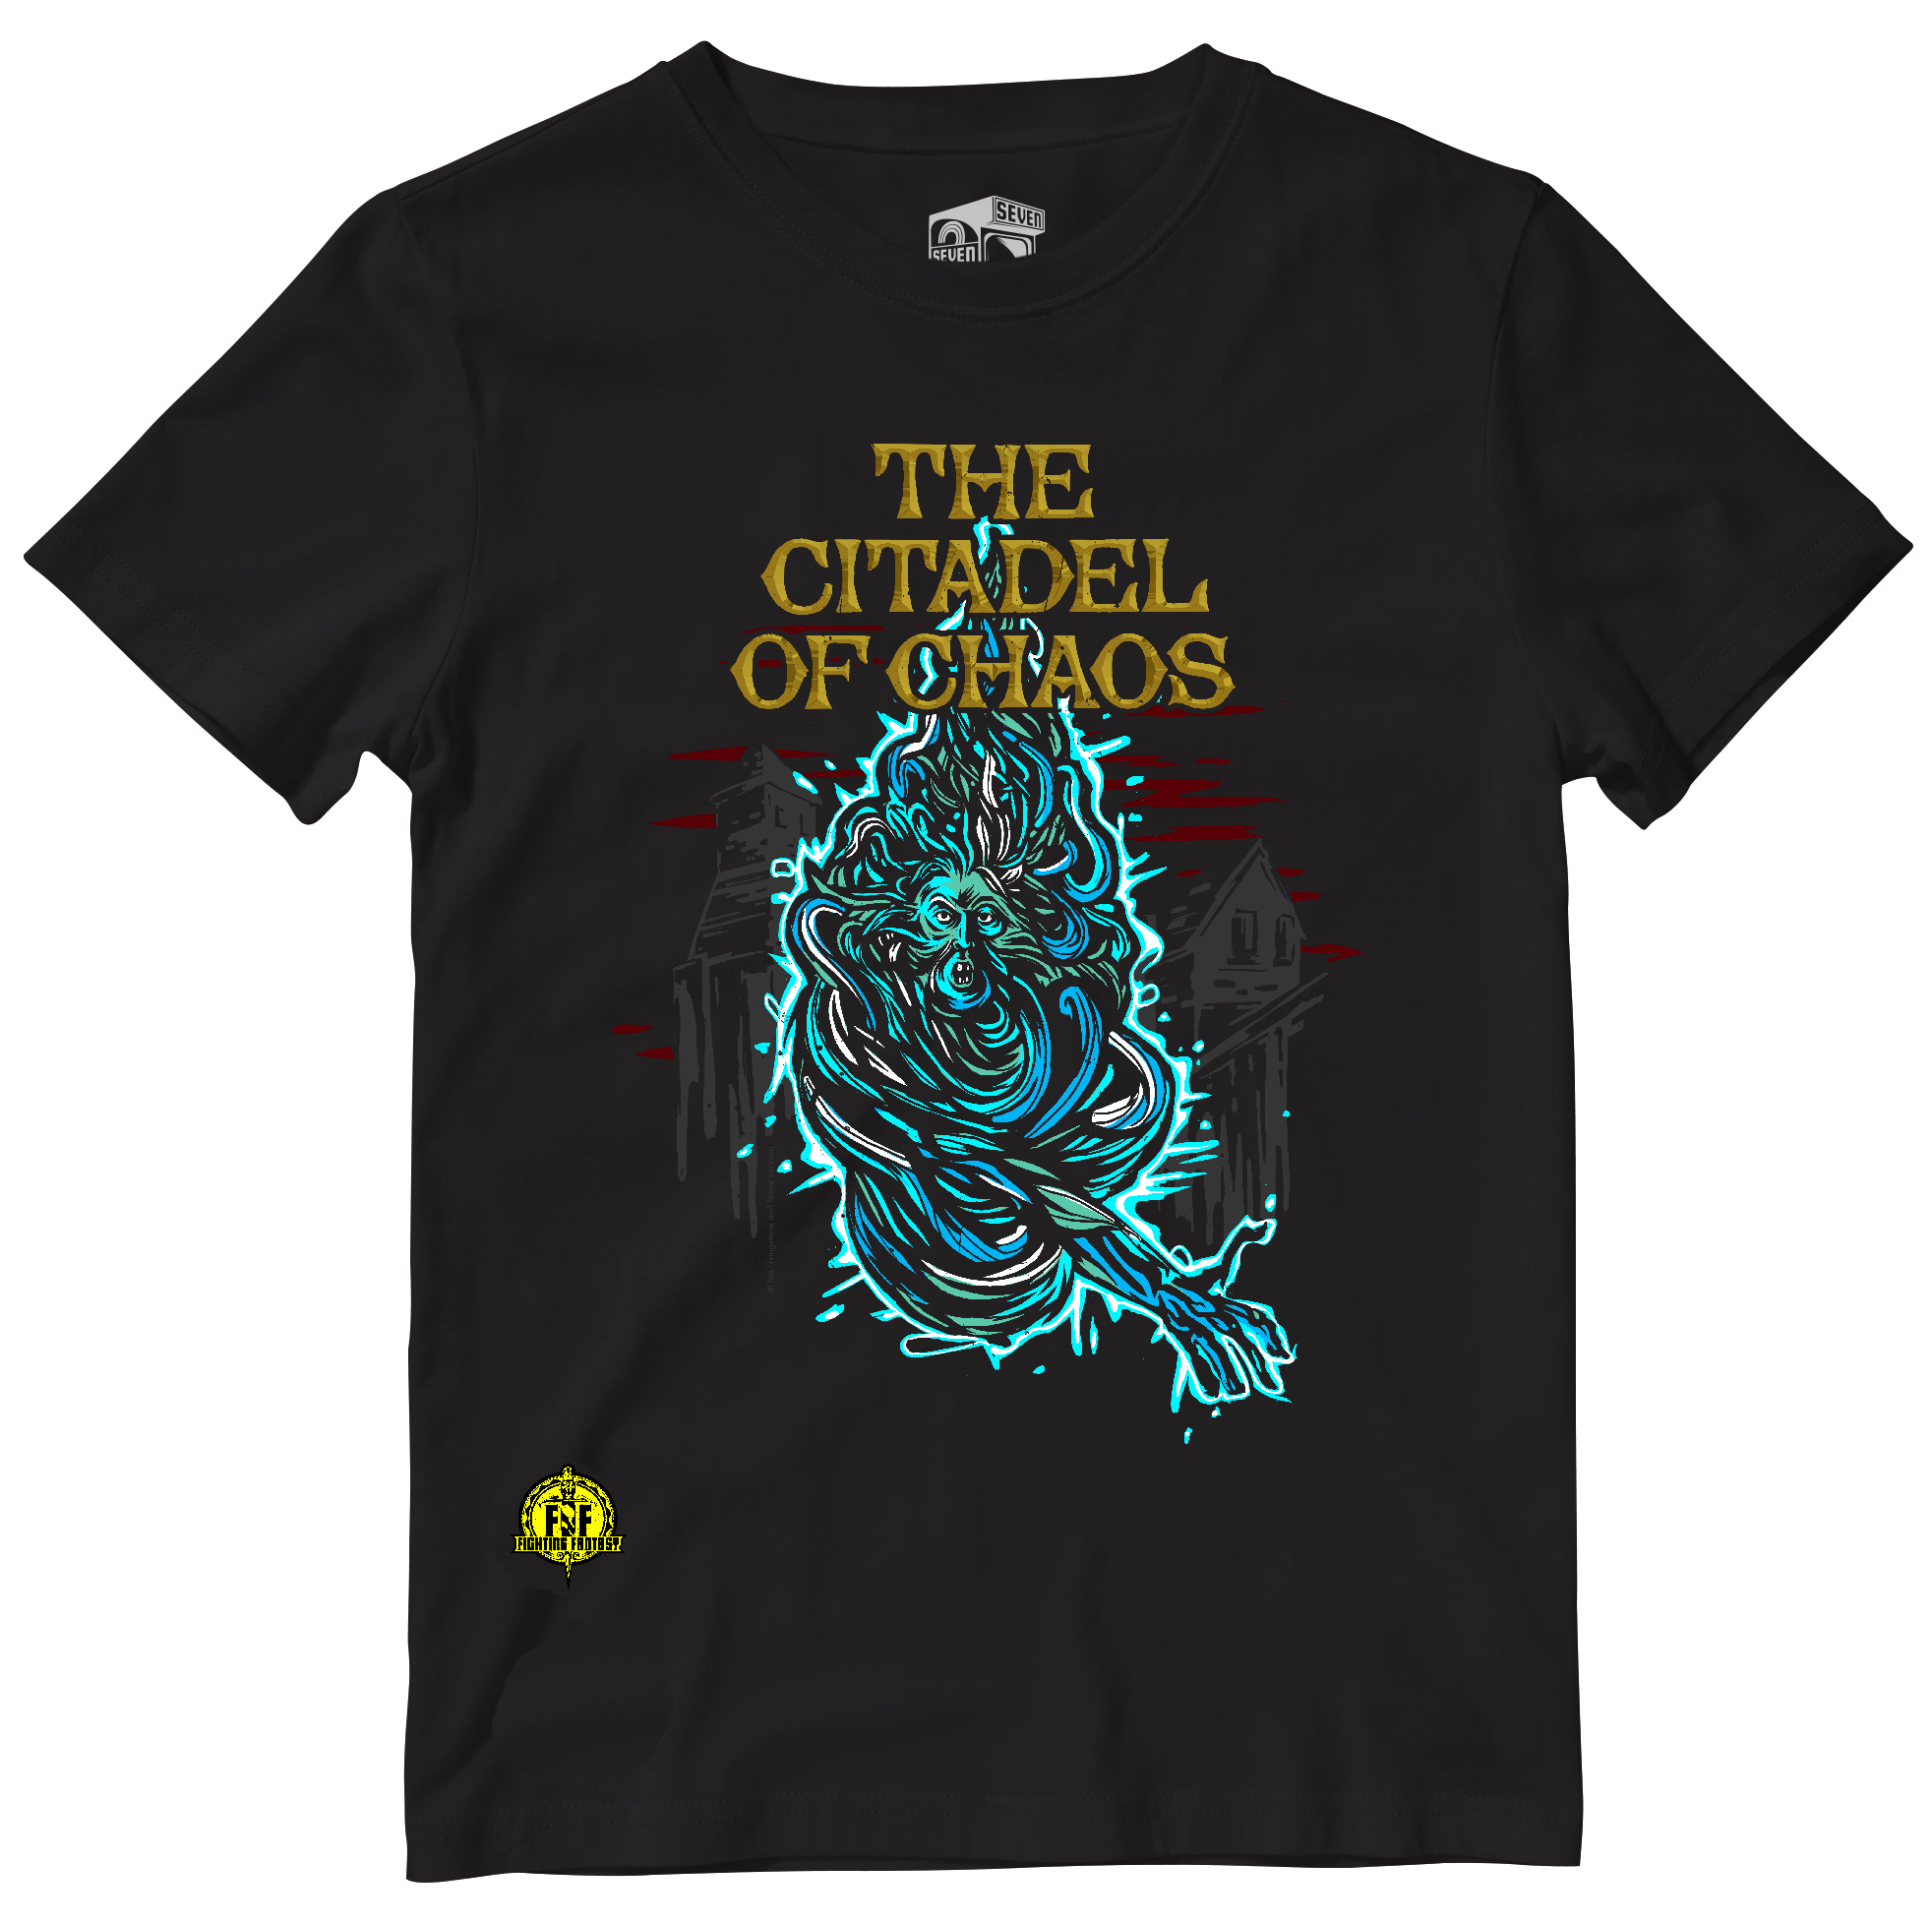 Citadel of Chaos t-shirt